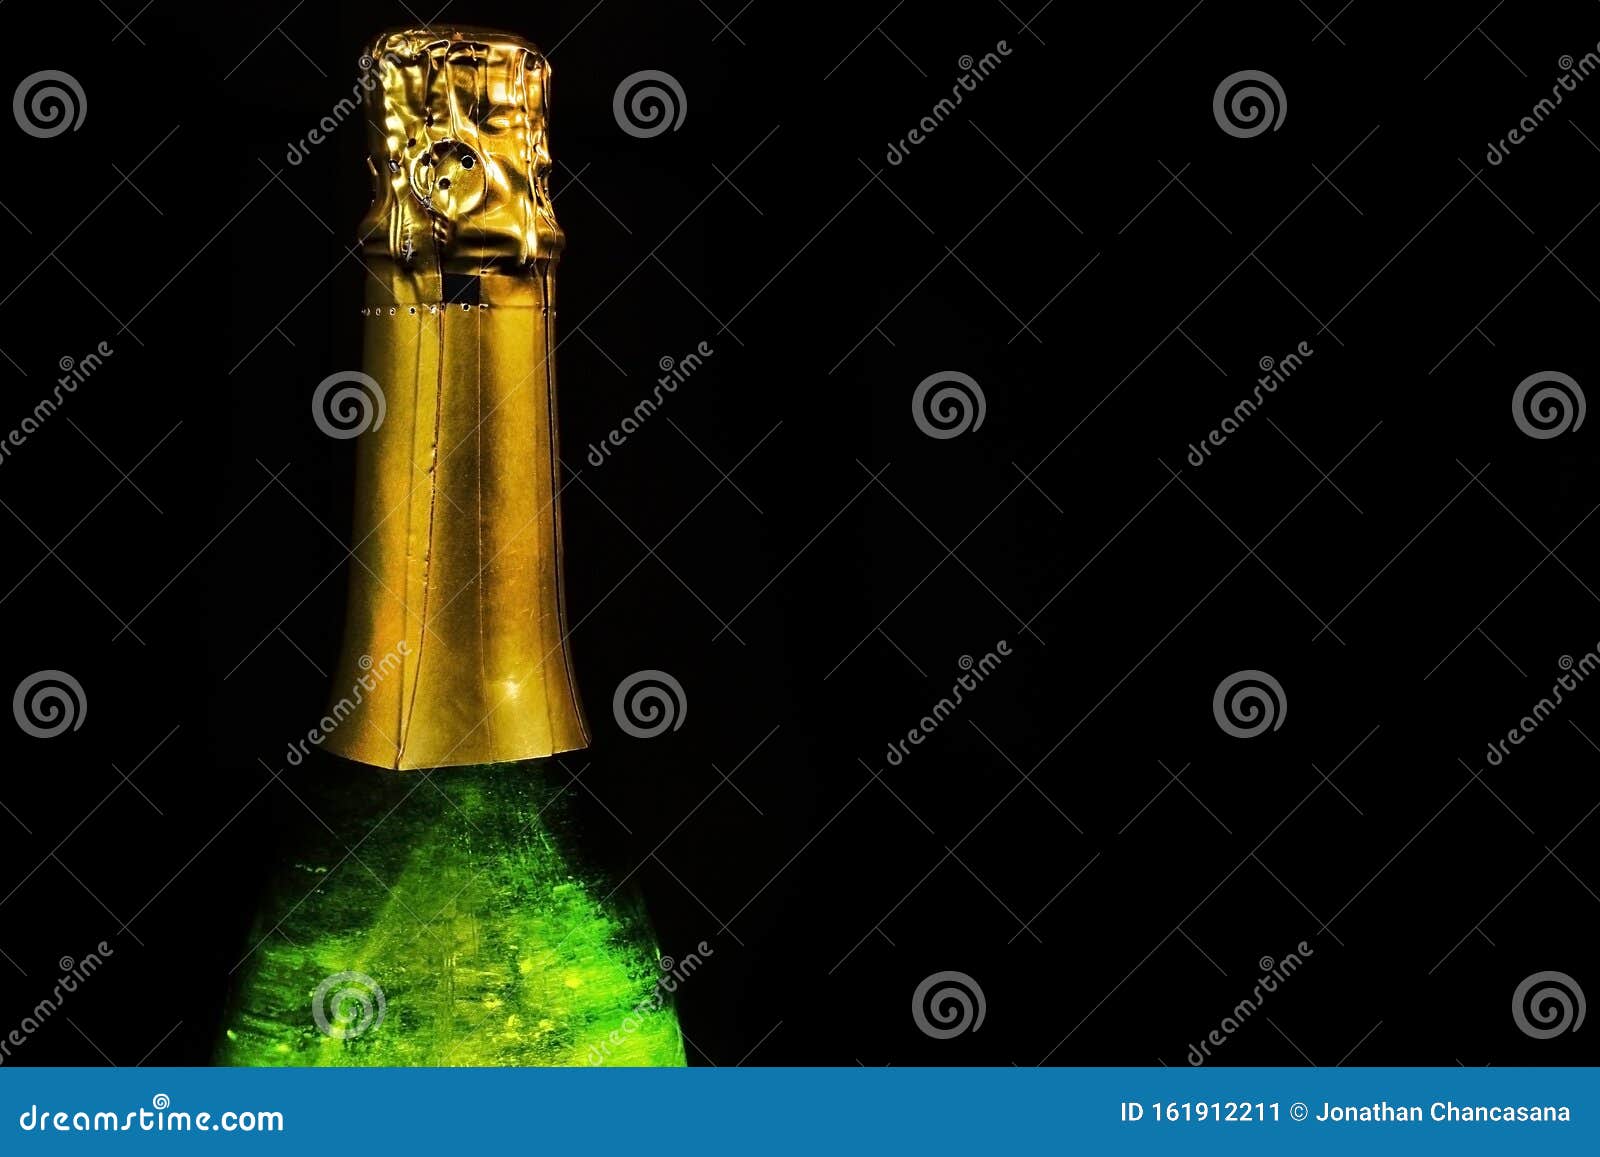 botella de champan